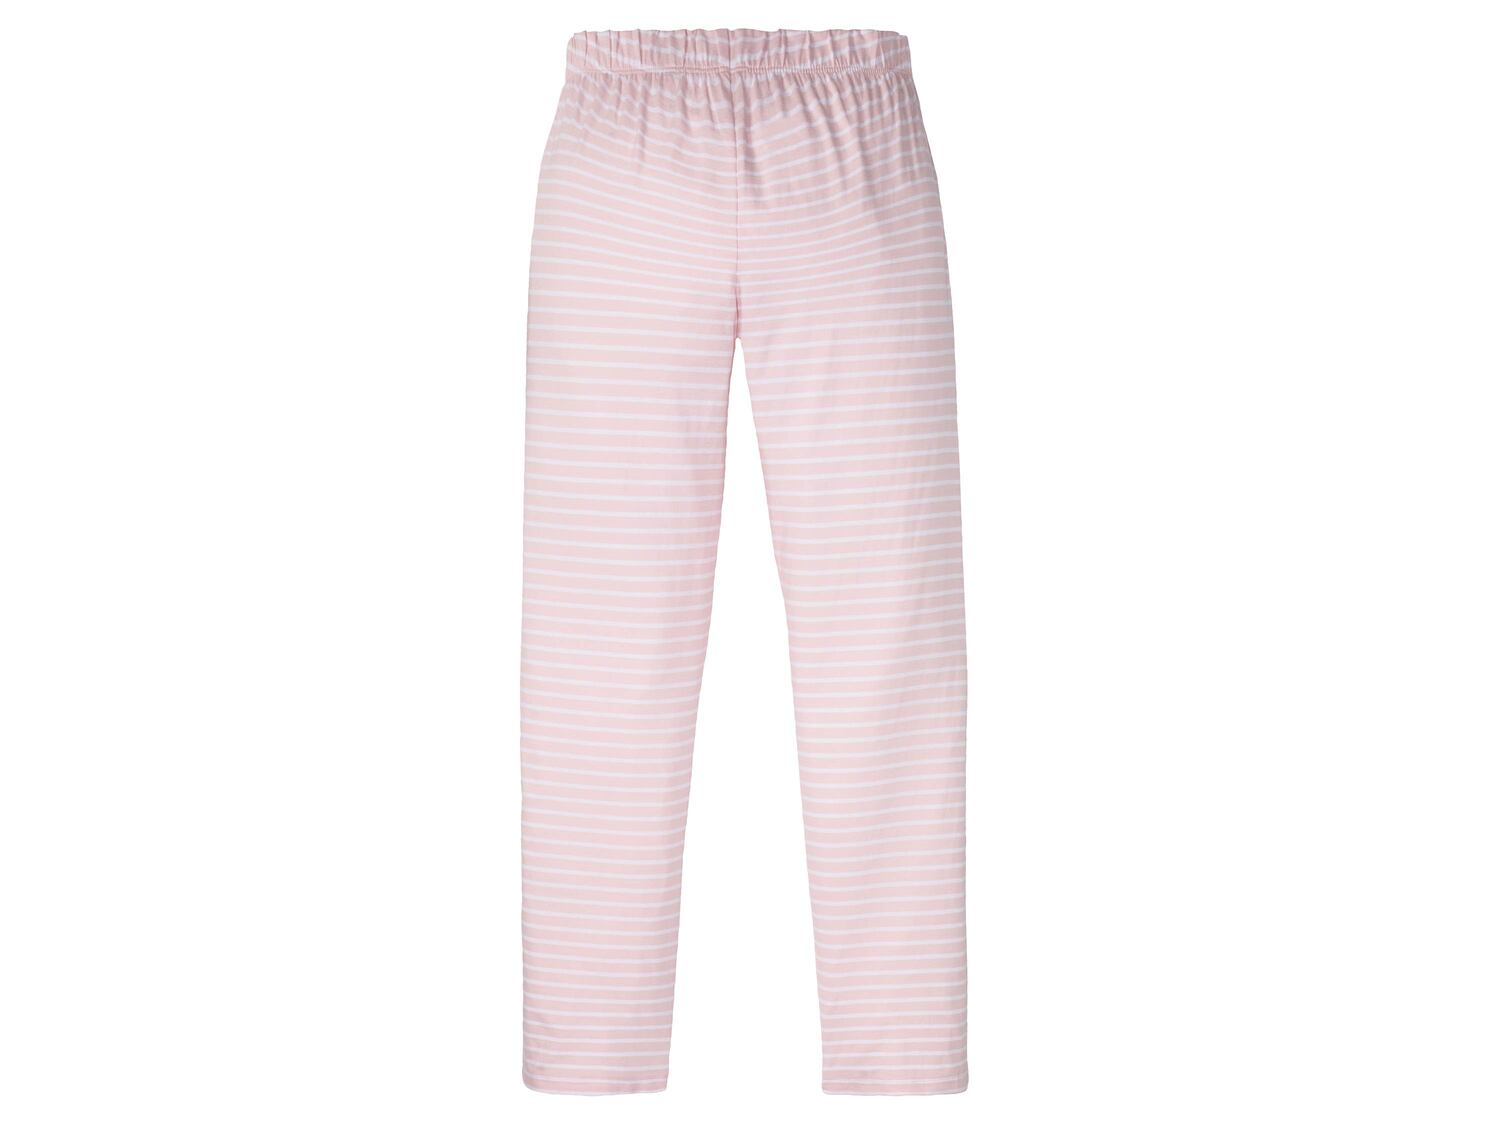 Spodnie do spania damskie Esmara Lingerie, cena 21,99 PLN 
- rozmiary: XS-L
- 100% ...